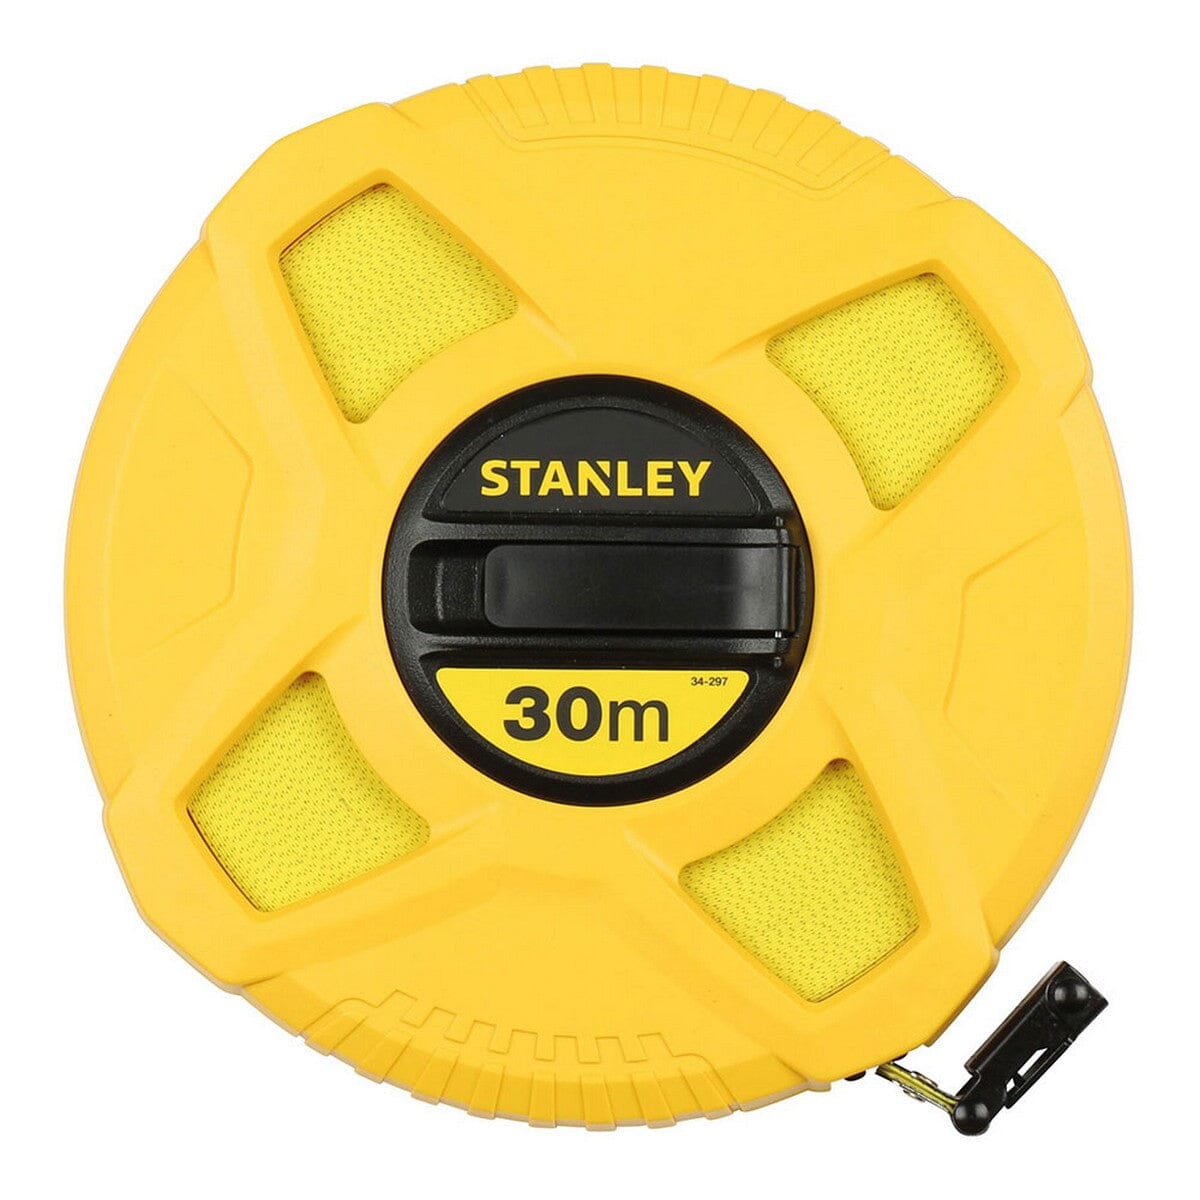 Massband Stanley 0-34-297 30 m - werkzeug-online24